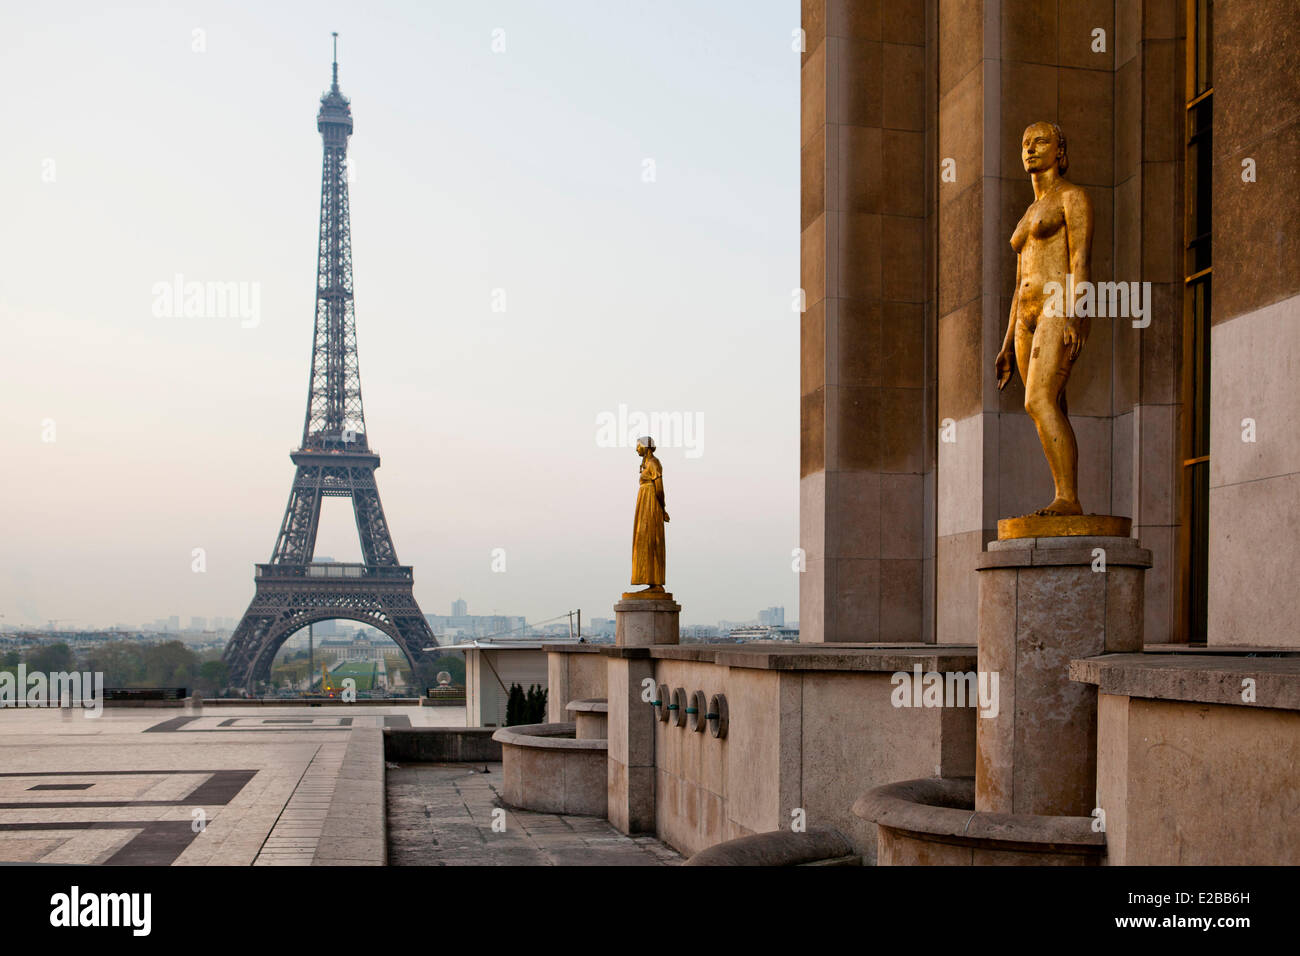 France, Paris, Place du Trocadero, Parvis des Droits de l'Homme and Eiffel Tower Stock Photo